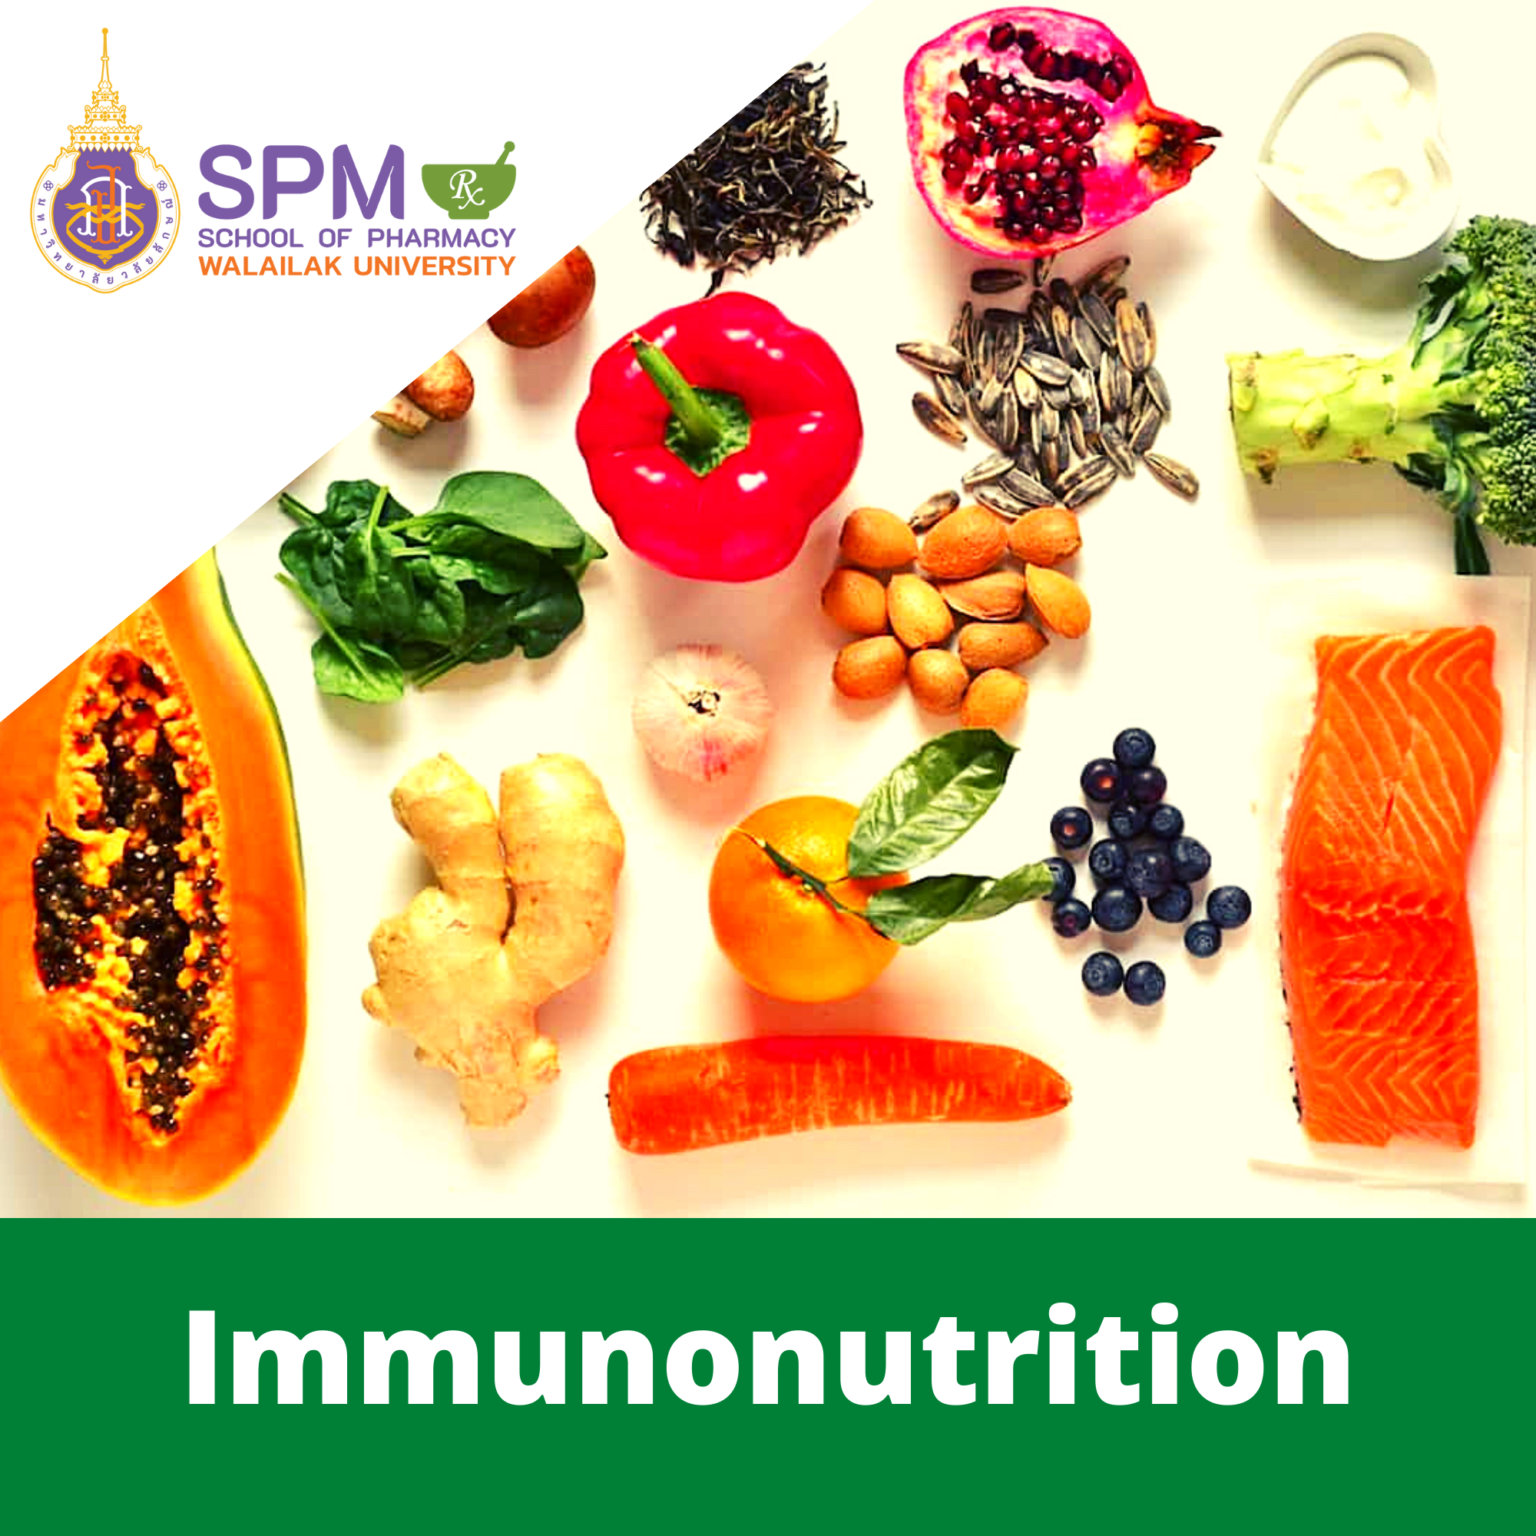 Immunonutrition